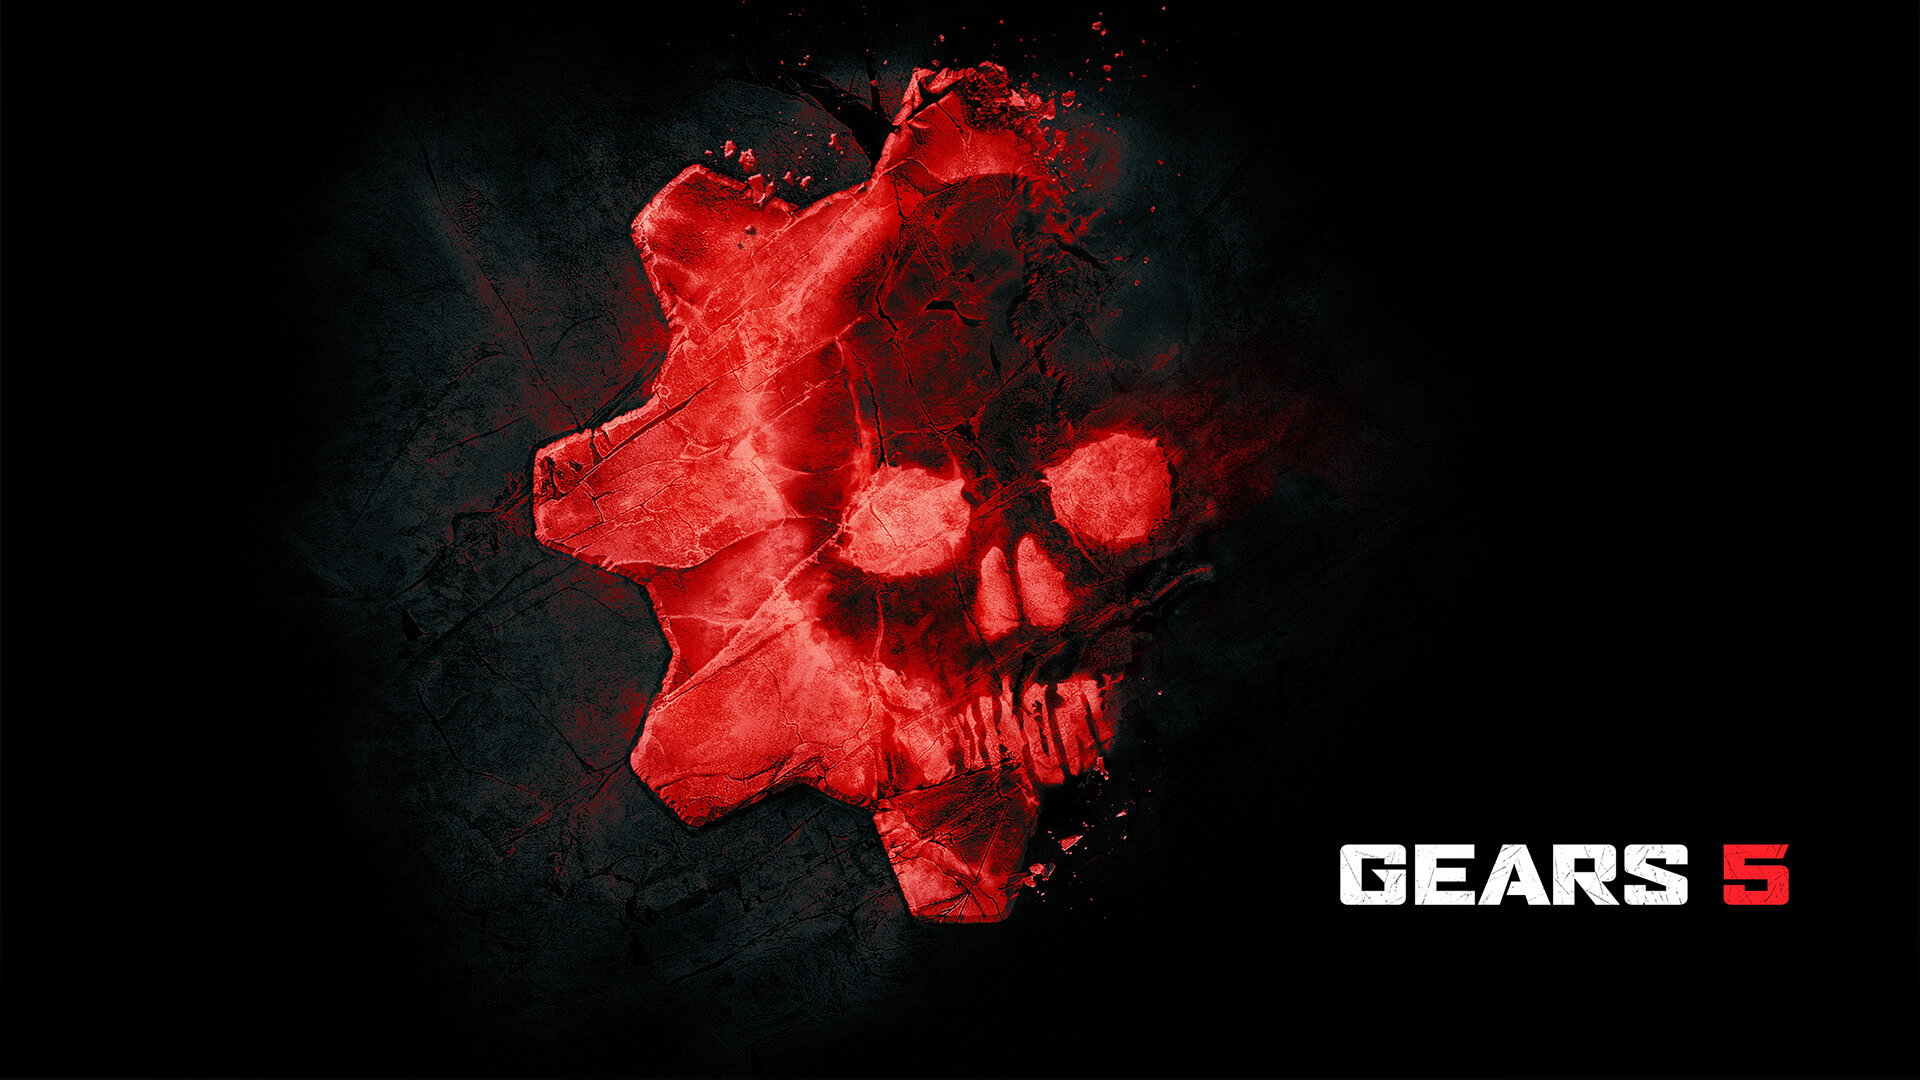 Gears 5 menerima "skor sempurna" dari situs yang mengevaluasi aksesibilitas di video game 9